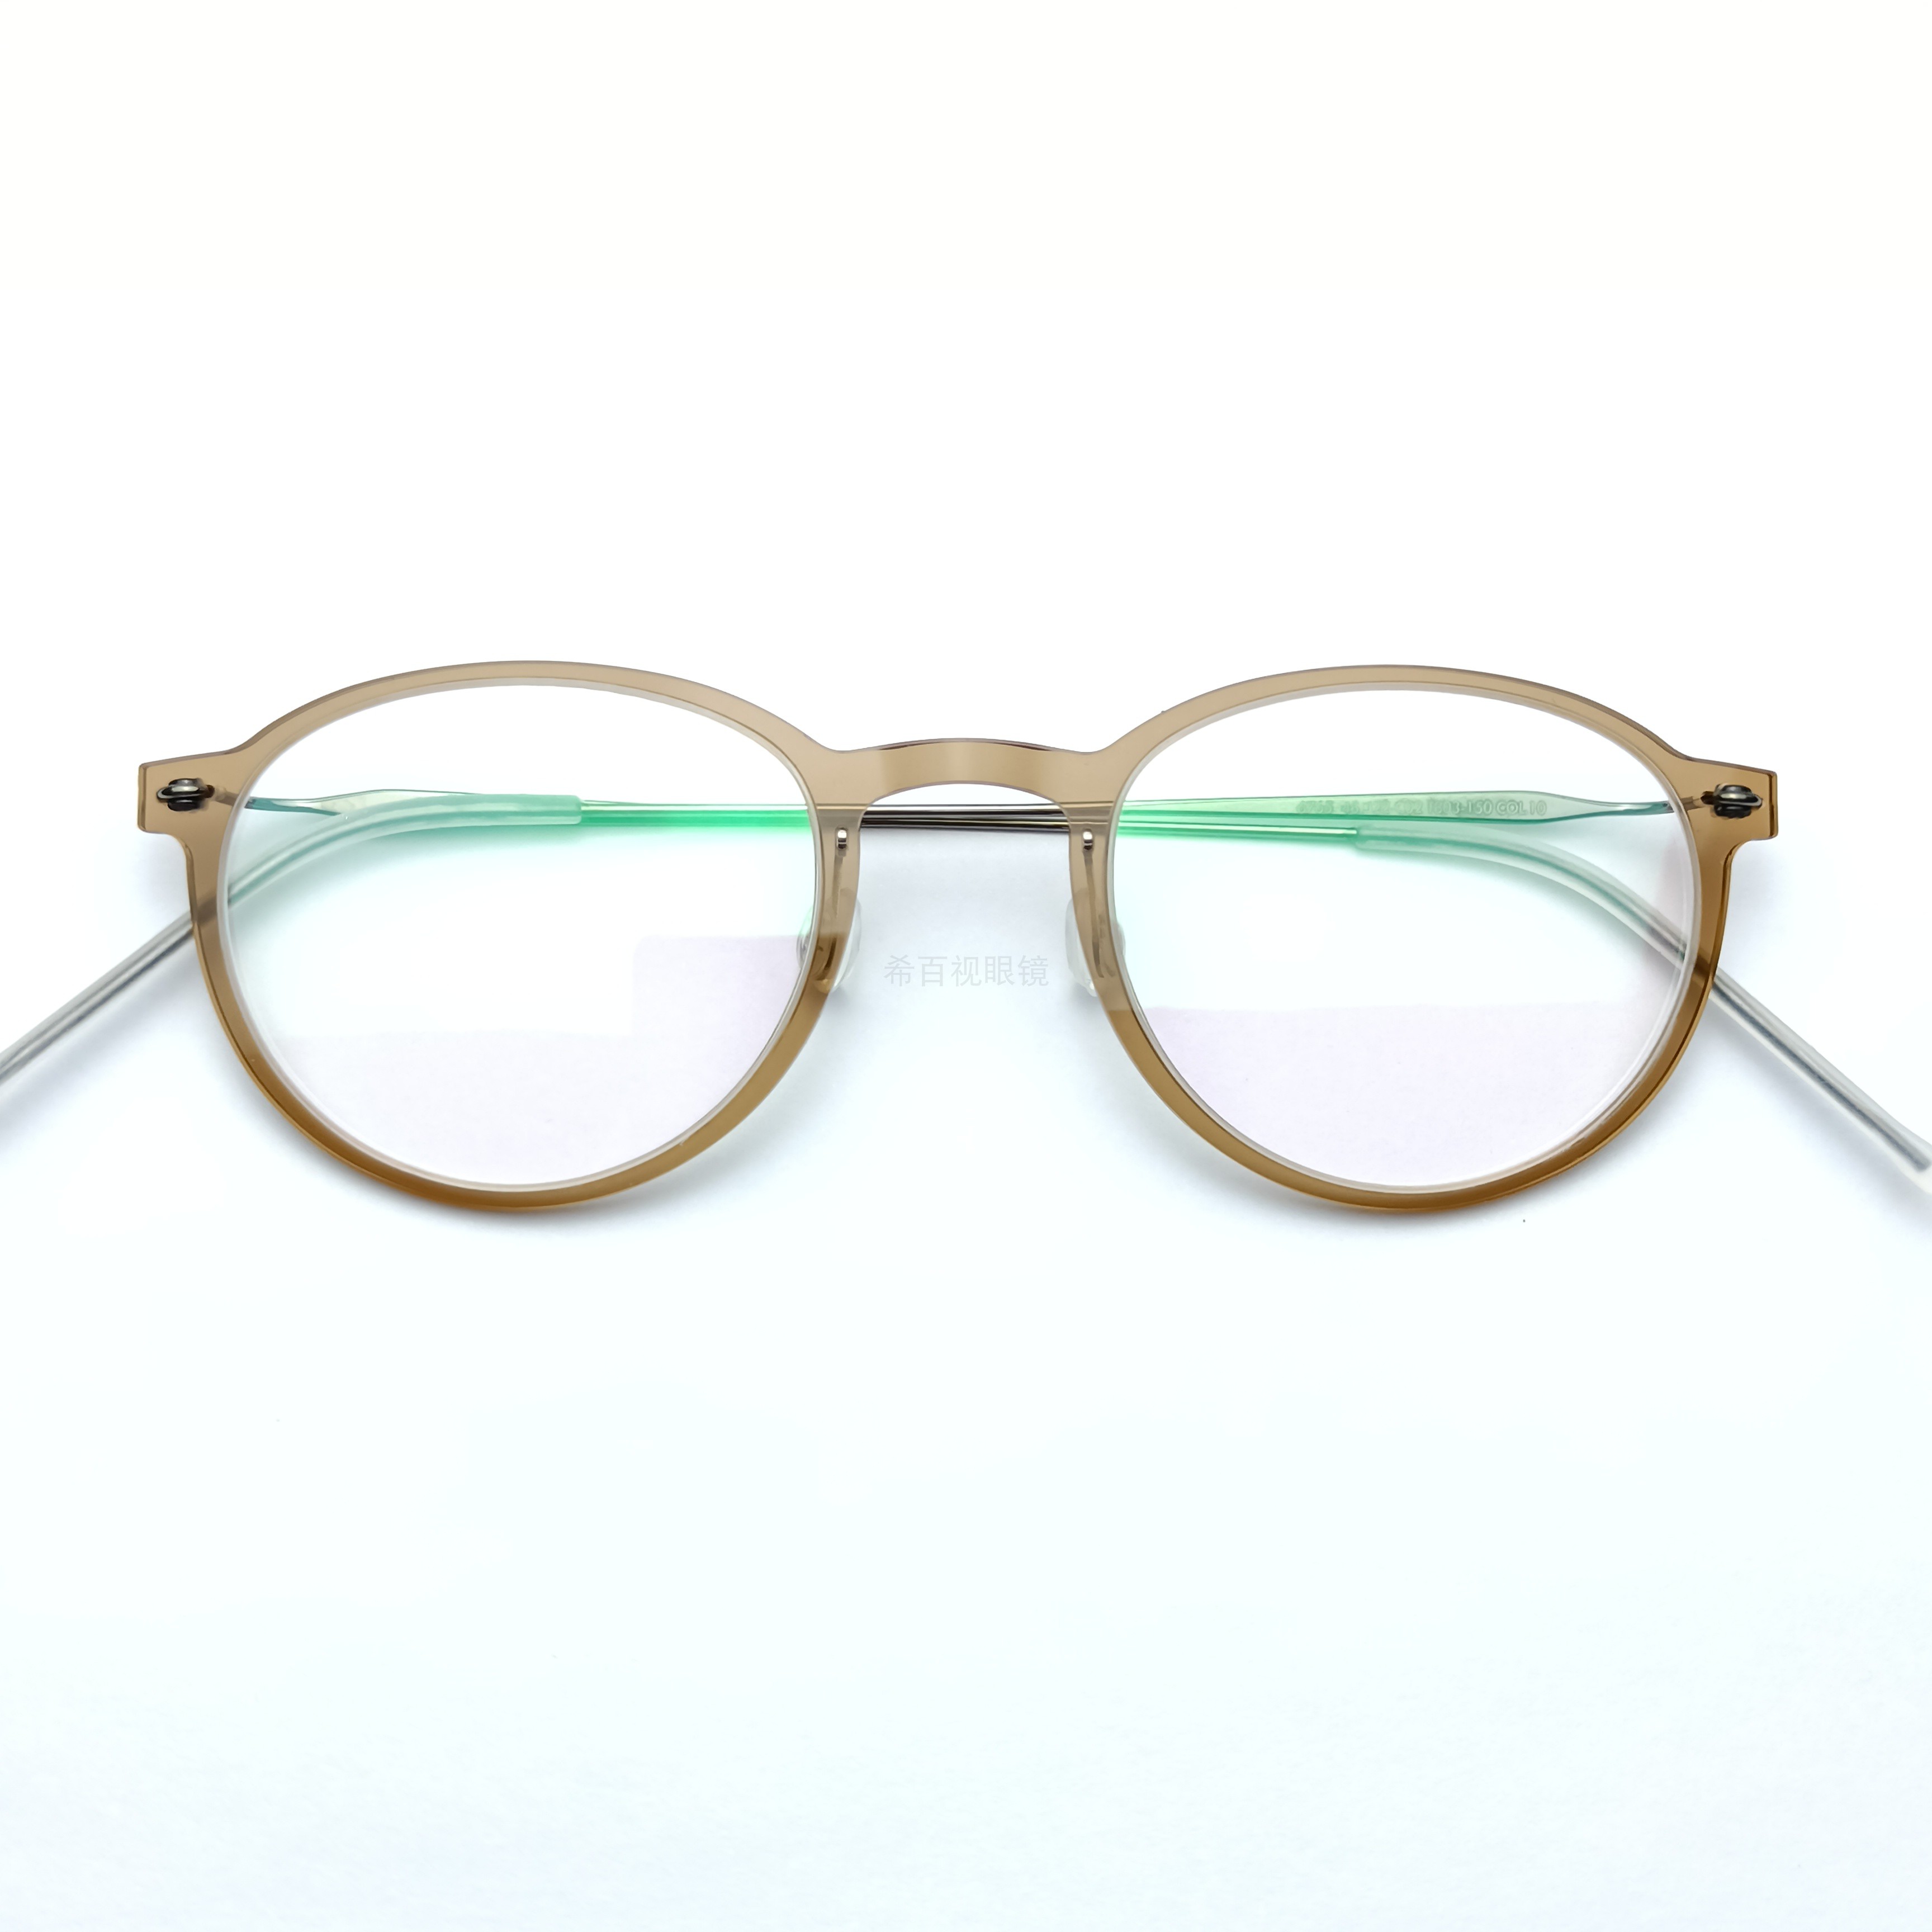 林德6765超轻眼镜框架纯钛镜腿4.1g丹麦无螺丝设计翡翠绿咖啡茶色 - 图2